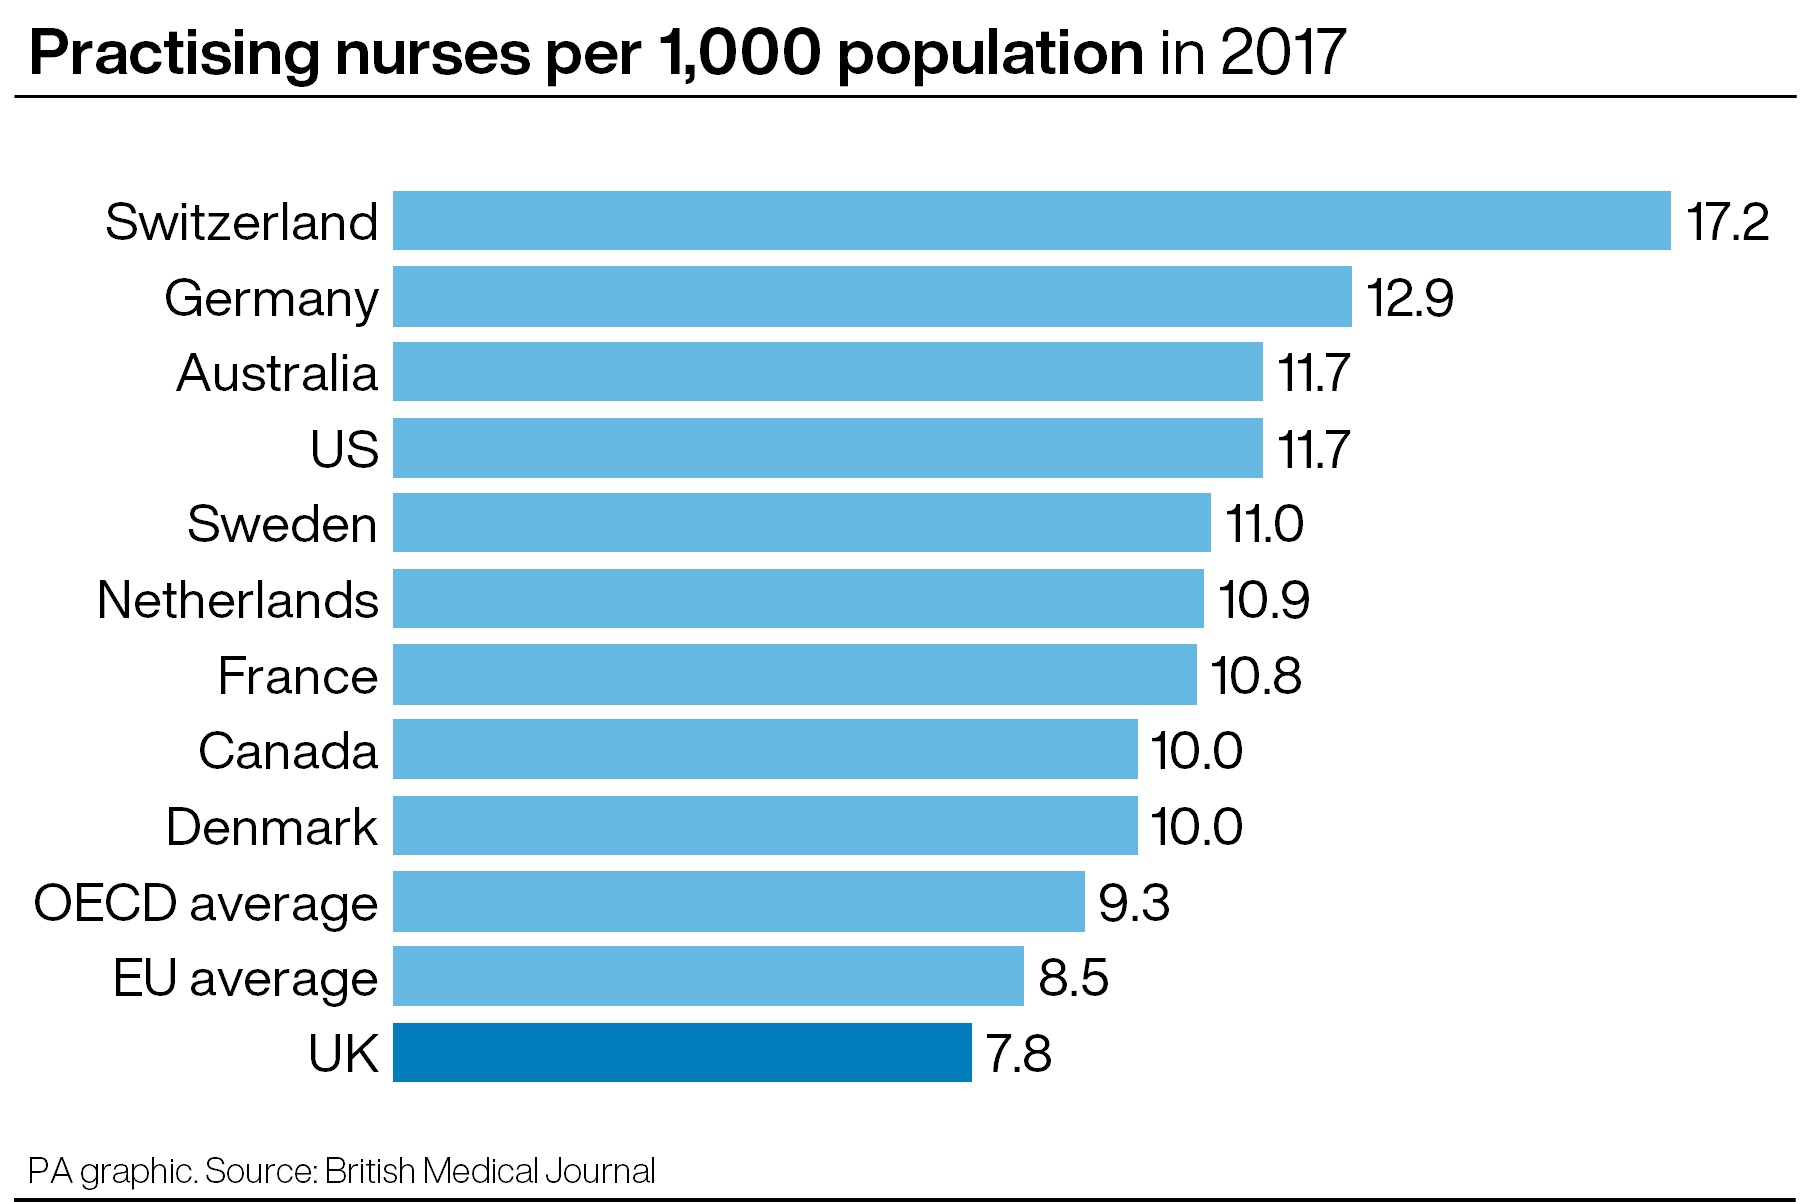 Practising nurses per 1,000 population in 2017